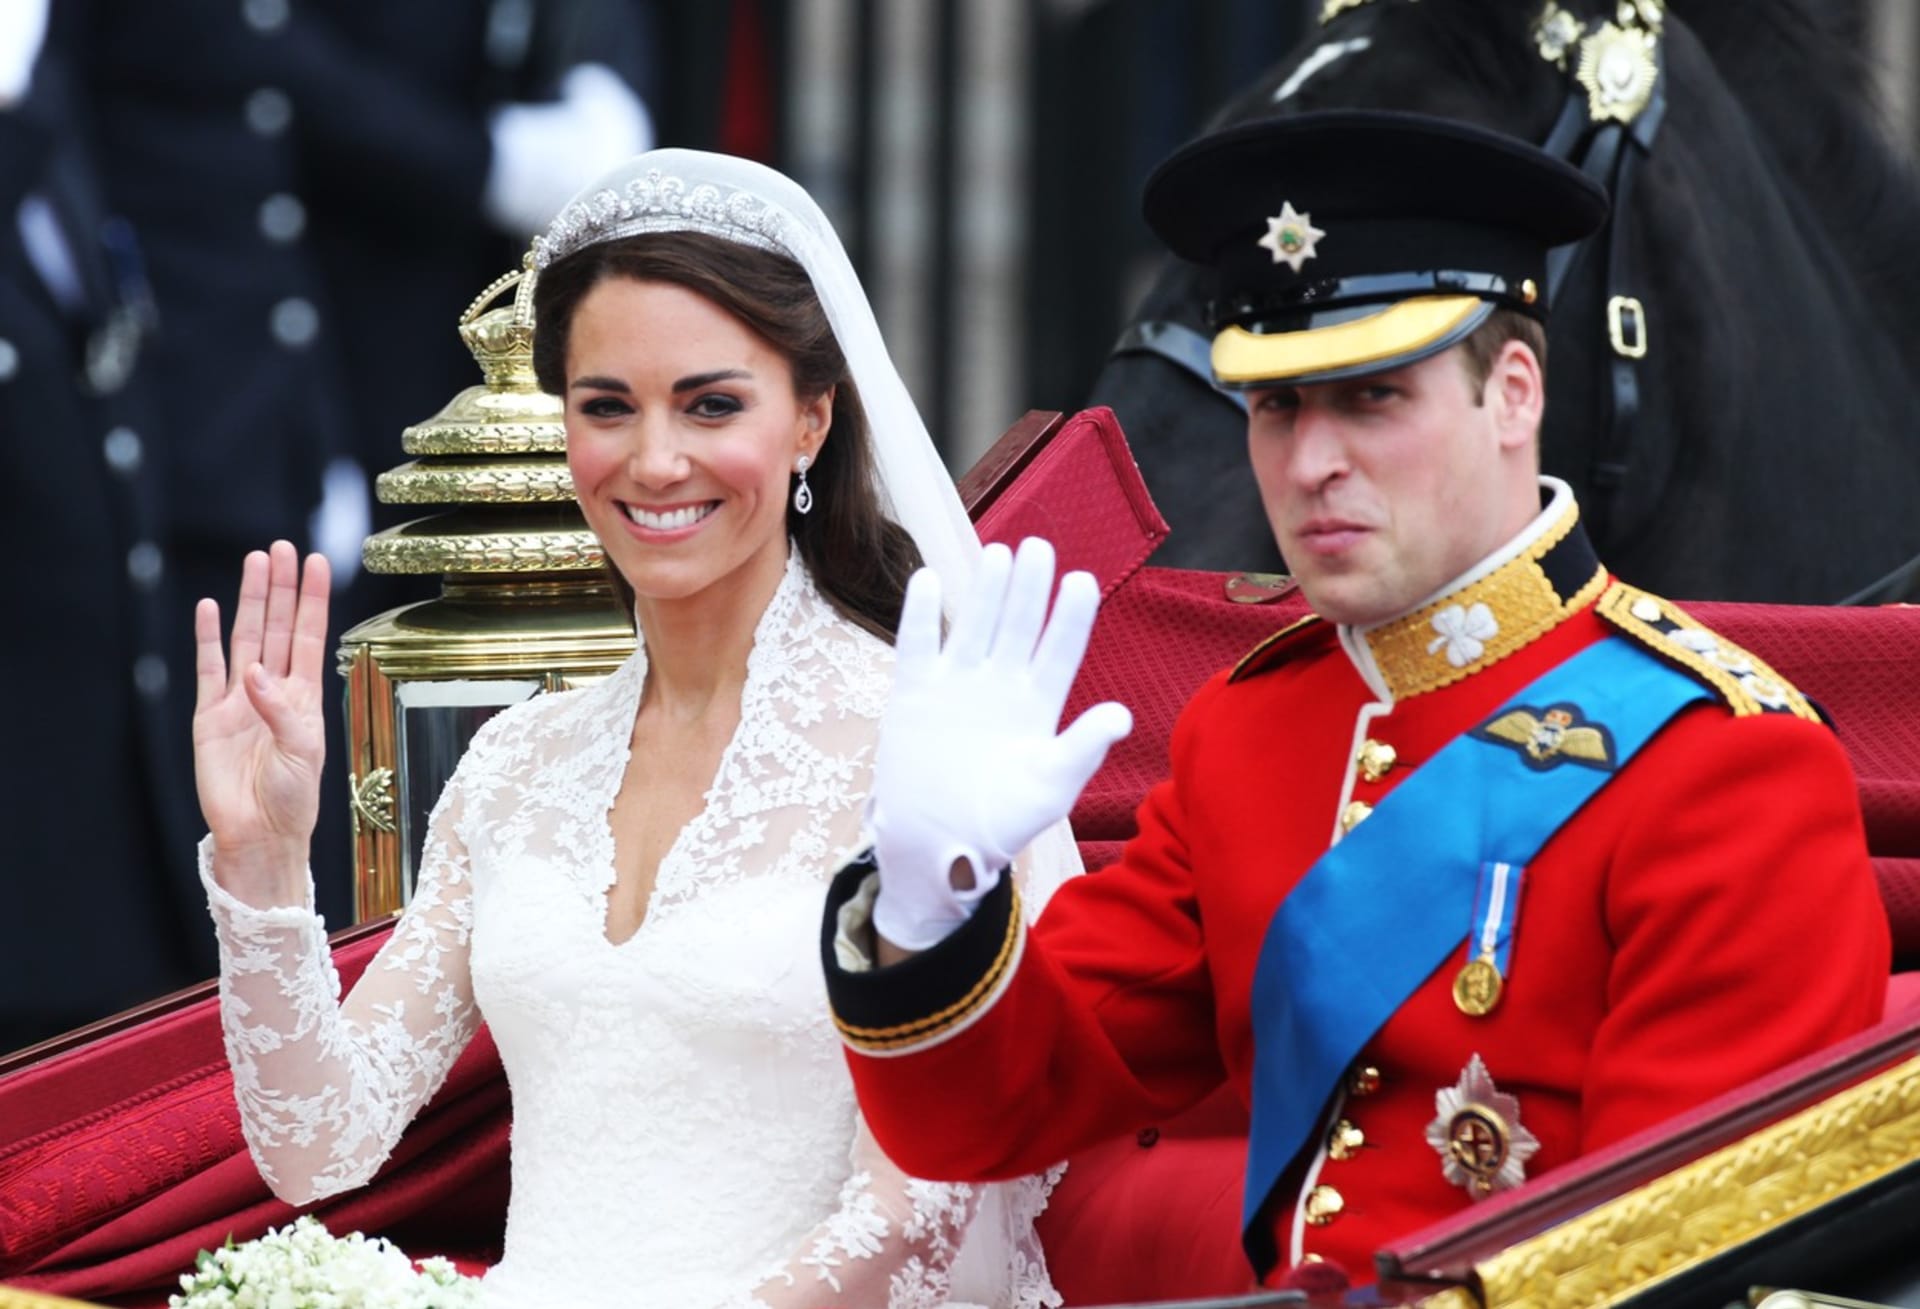 Velkolepá královská svatba 29. dubna 2011